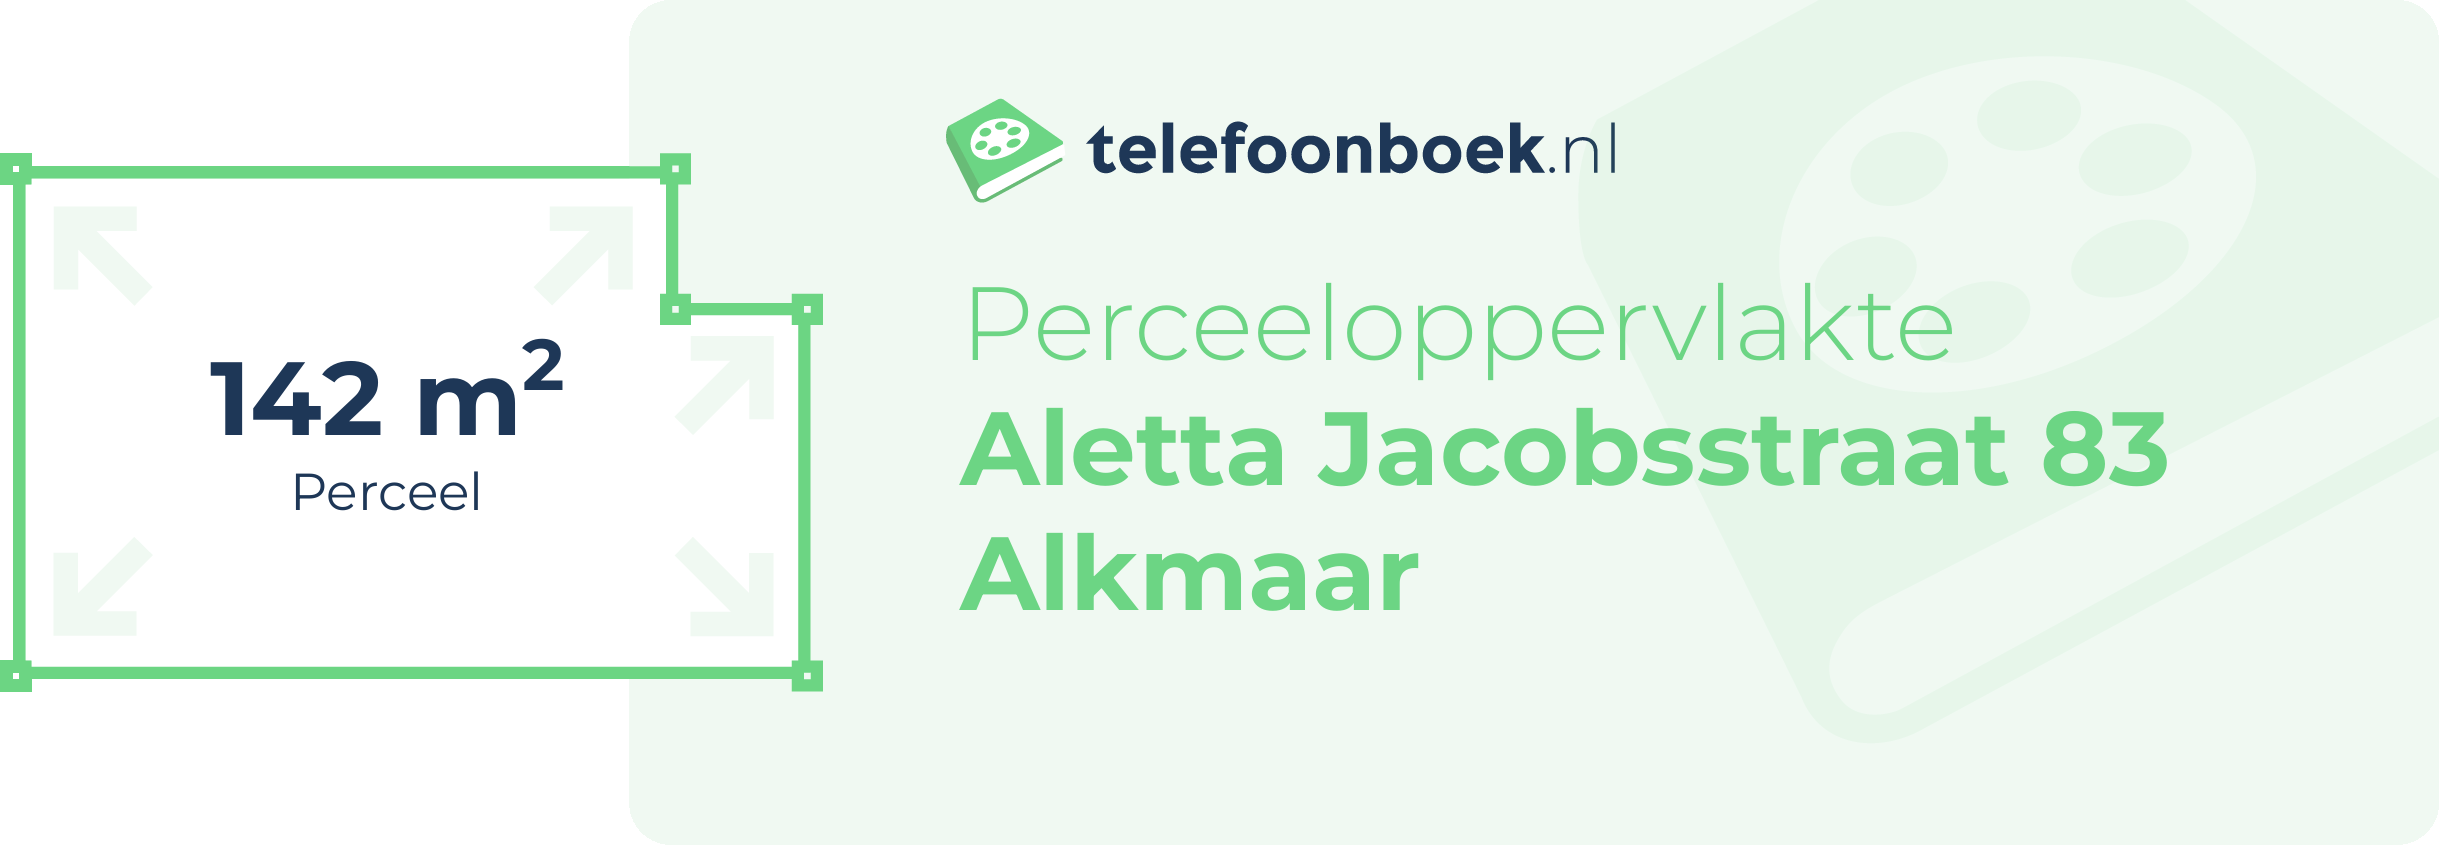 Perceeloppervlakte Aletta Jacobsstraat 83 Alkmaar